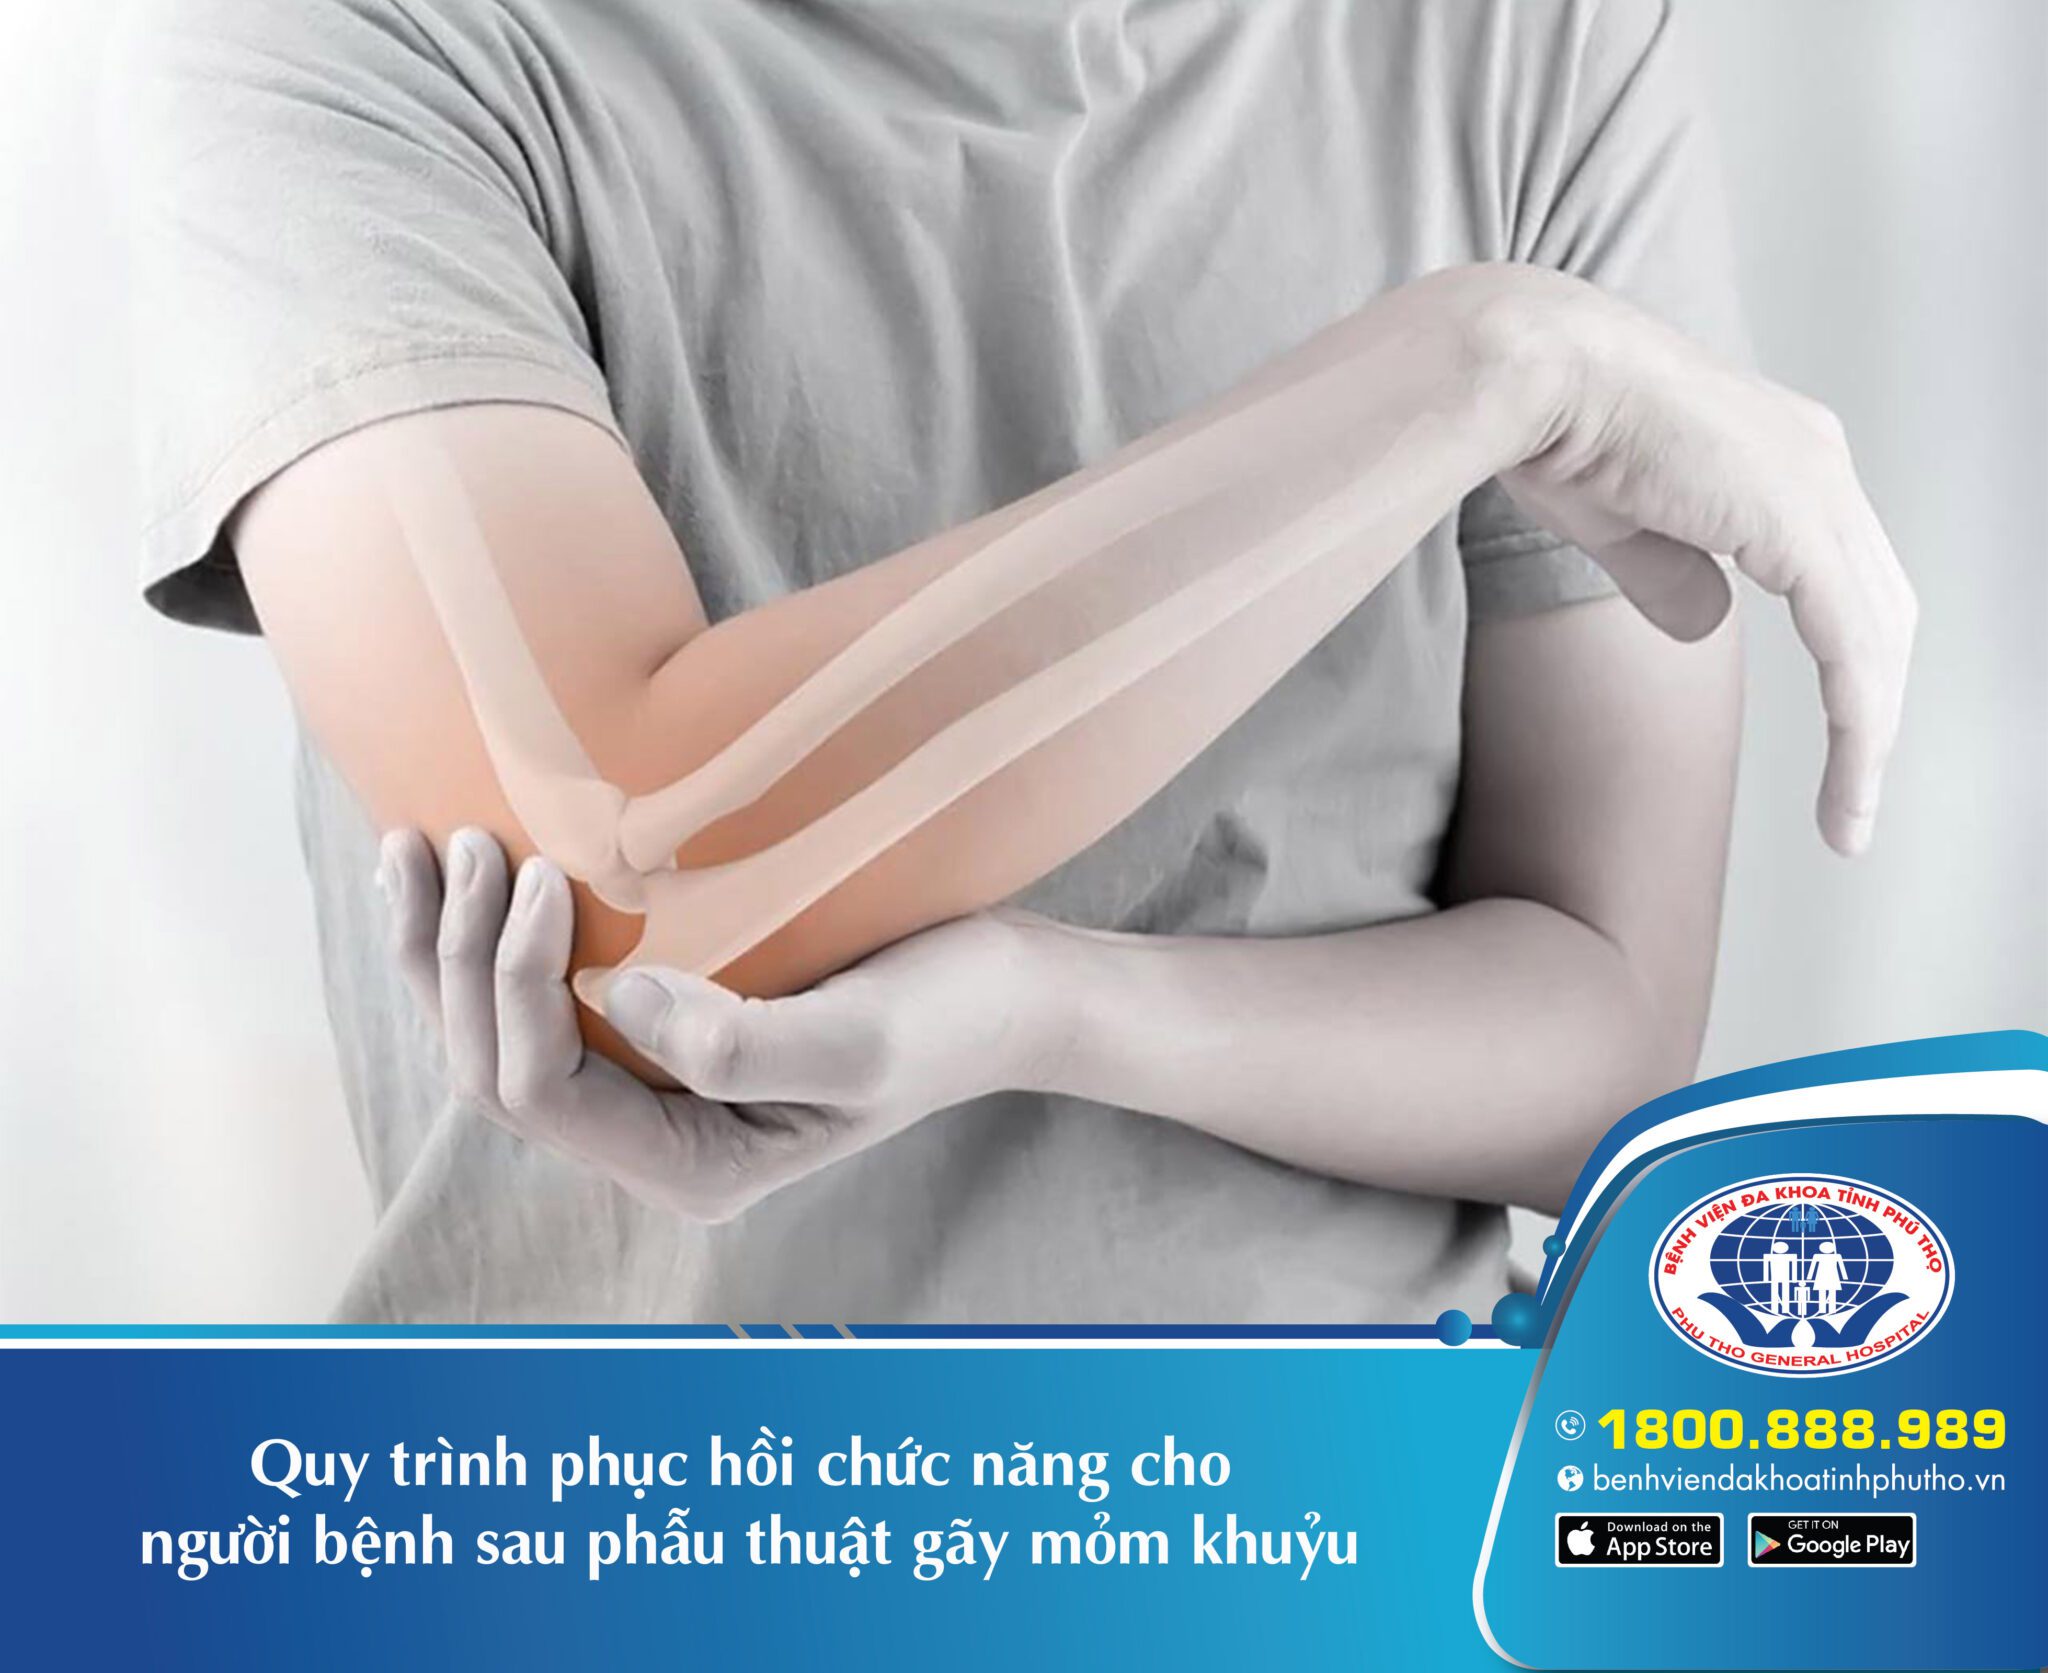 Tại sao phục hồi chức năng khớp khuỷu tay quan trọng trong việc điều trị các vấn đề liên quan đến xương và sụn của khuỷu tay?